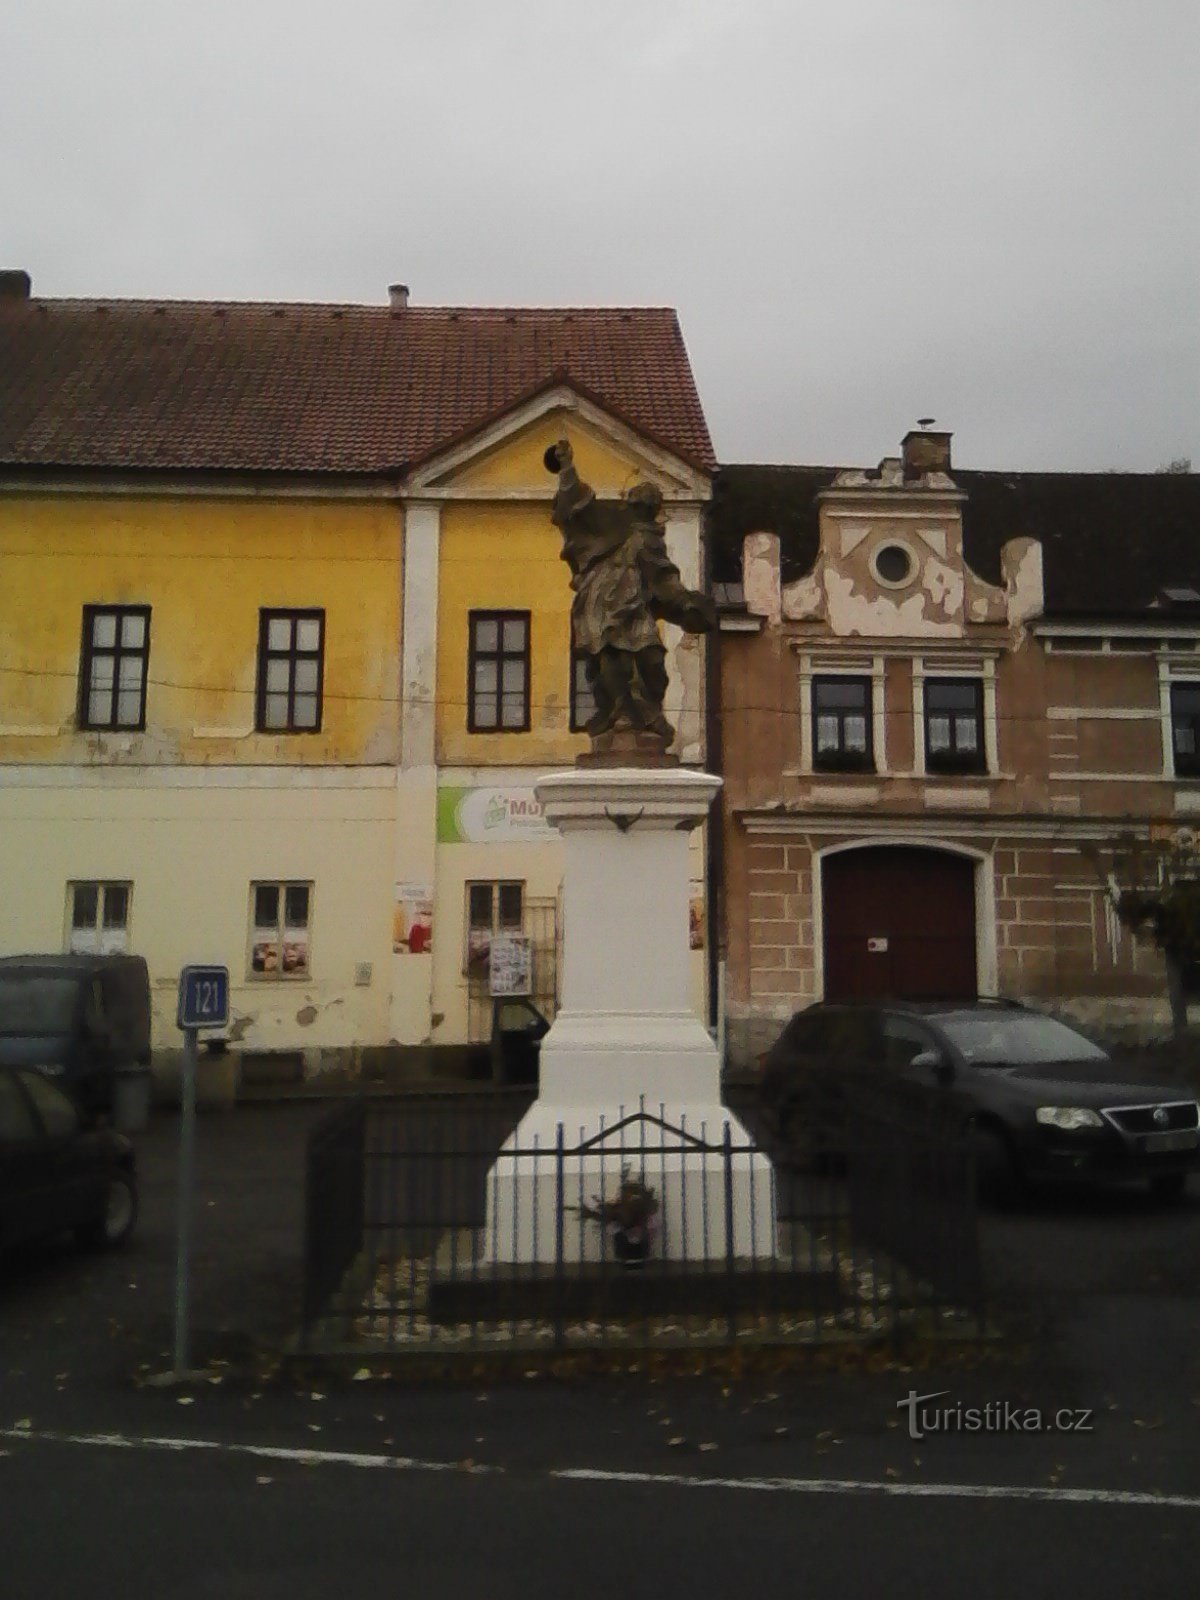 2. Statue des Hl. Johannes von Nepomuk in Sedlec.